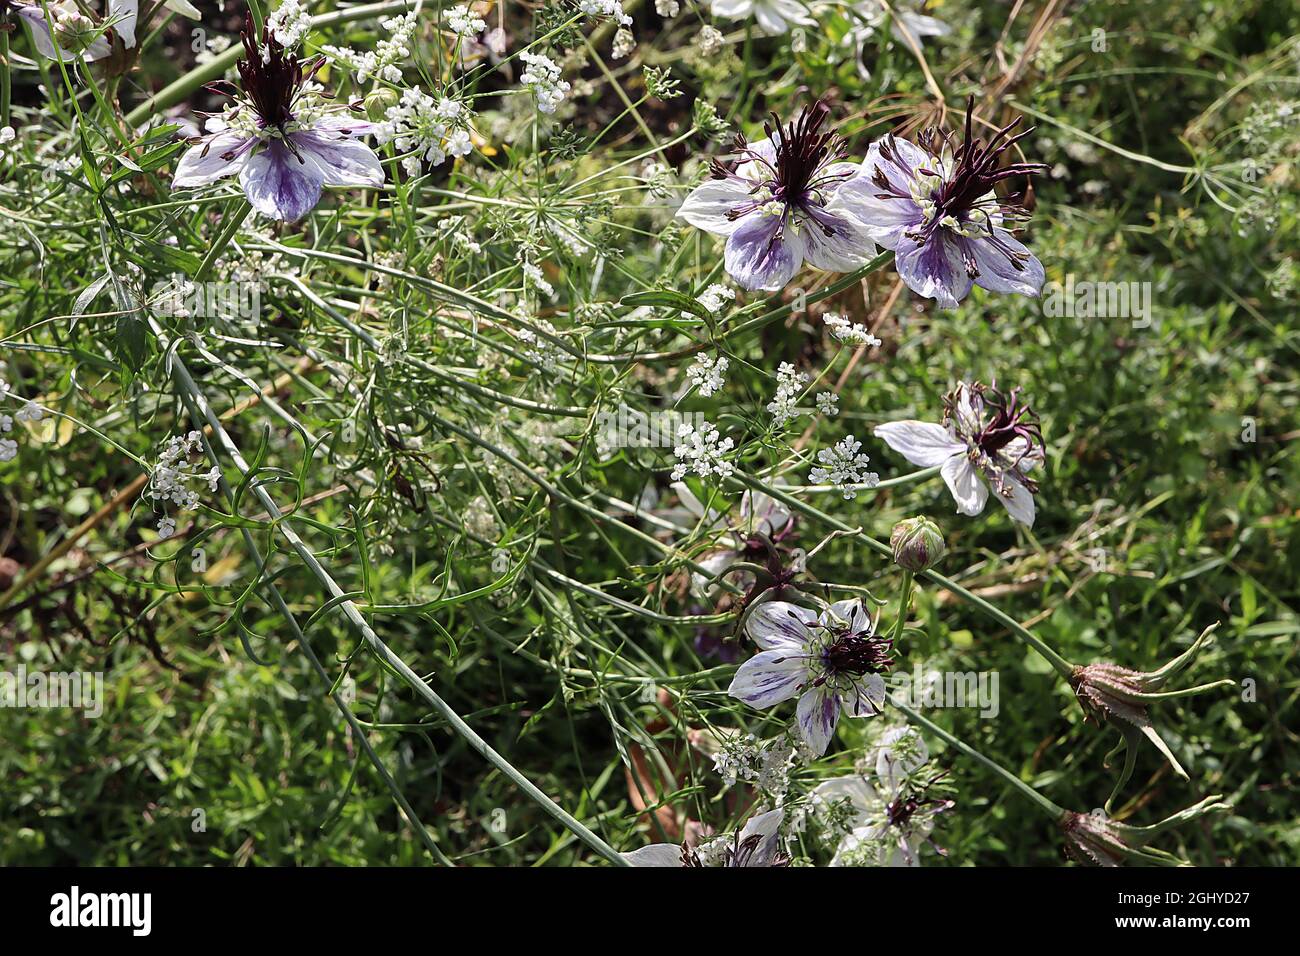 Nigella papillosa / hispanica Delft Blue love-in-a-mist Delft Blue – single white flowers, purple violet blotch, purple black upright stamens Stock Photo